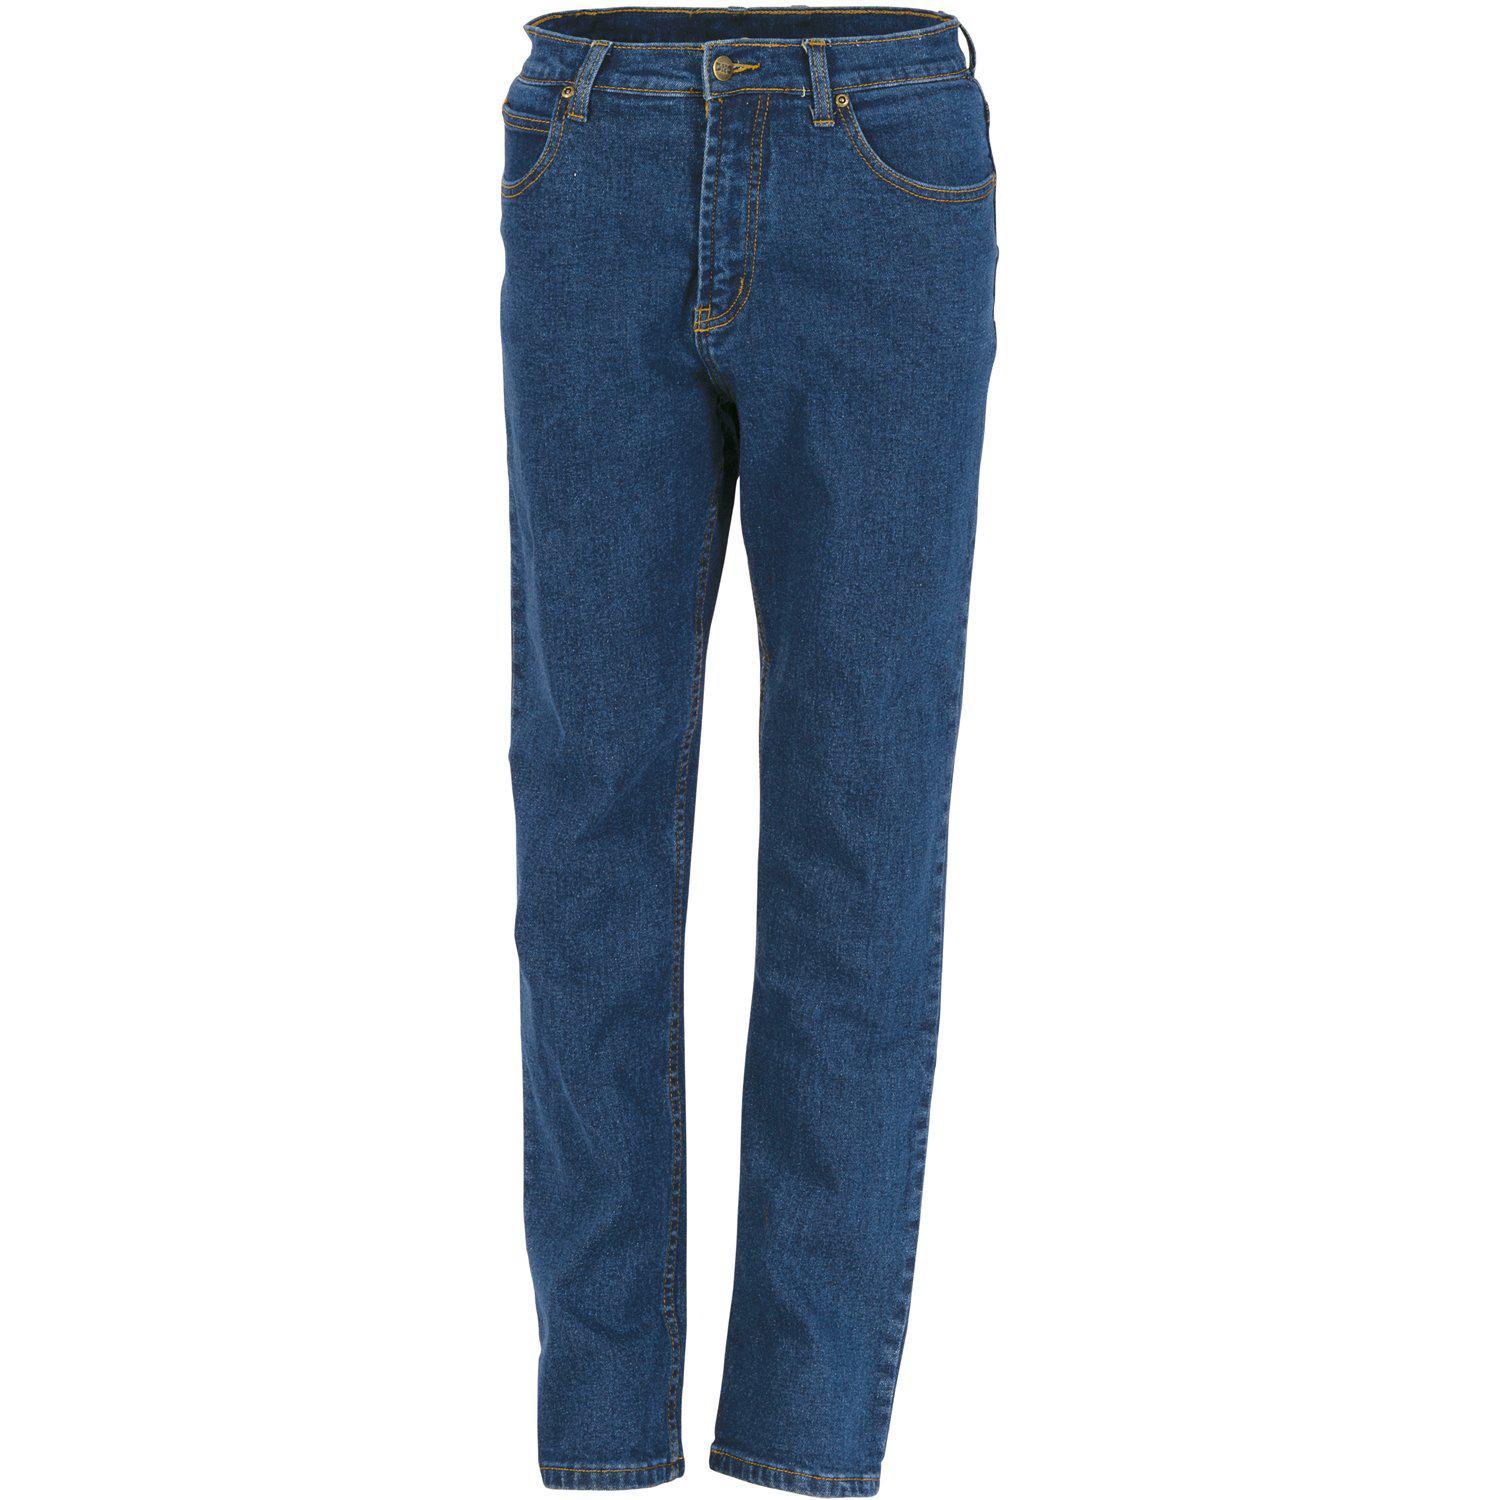 Buy DNC Ladies Denim Stretch Jeans - 3338 Online | Queensland Workwear  Supplies